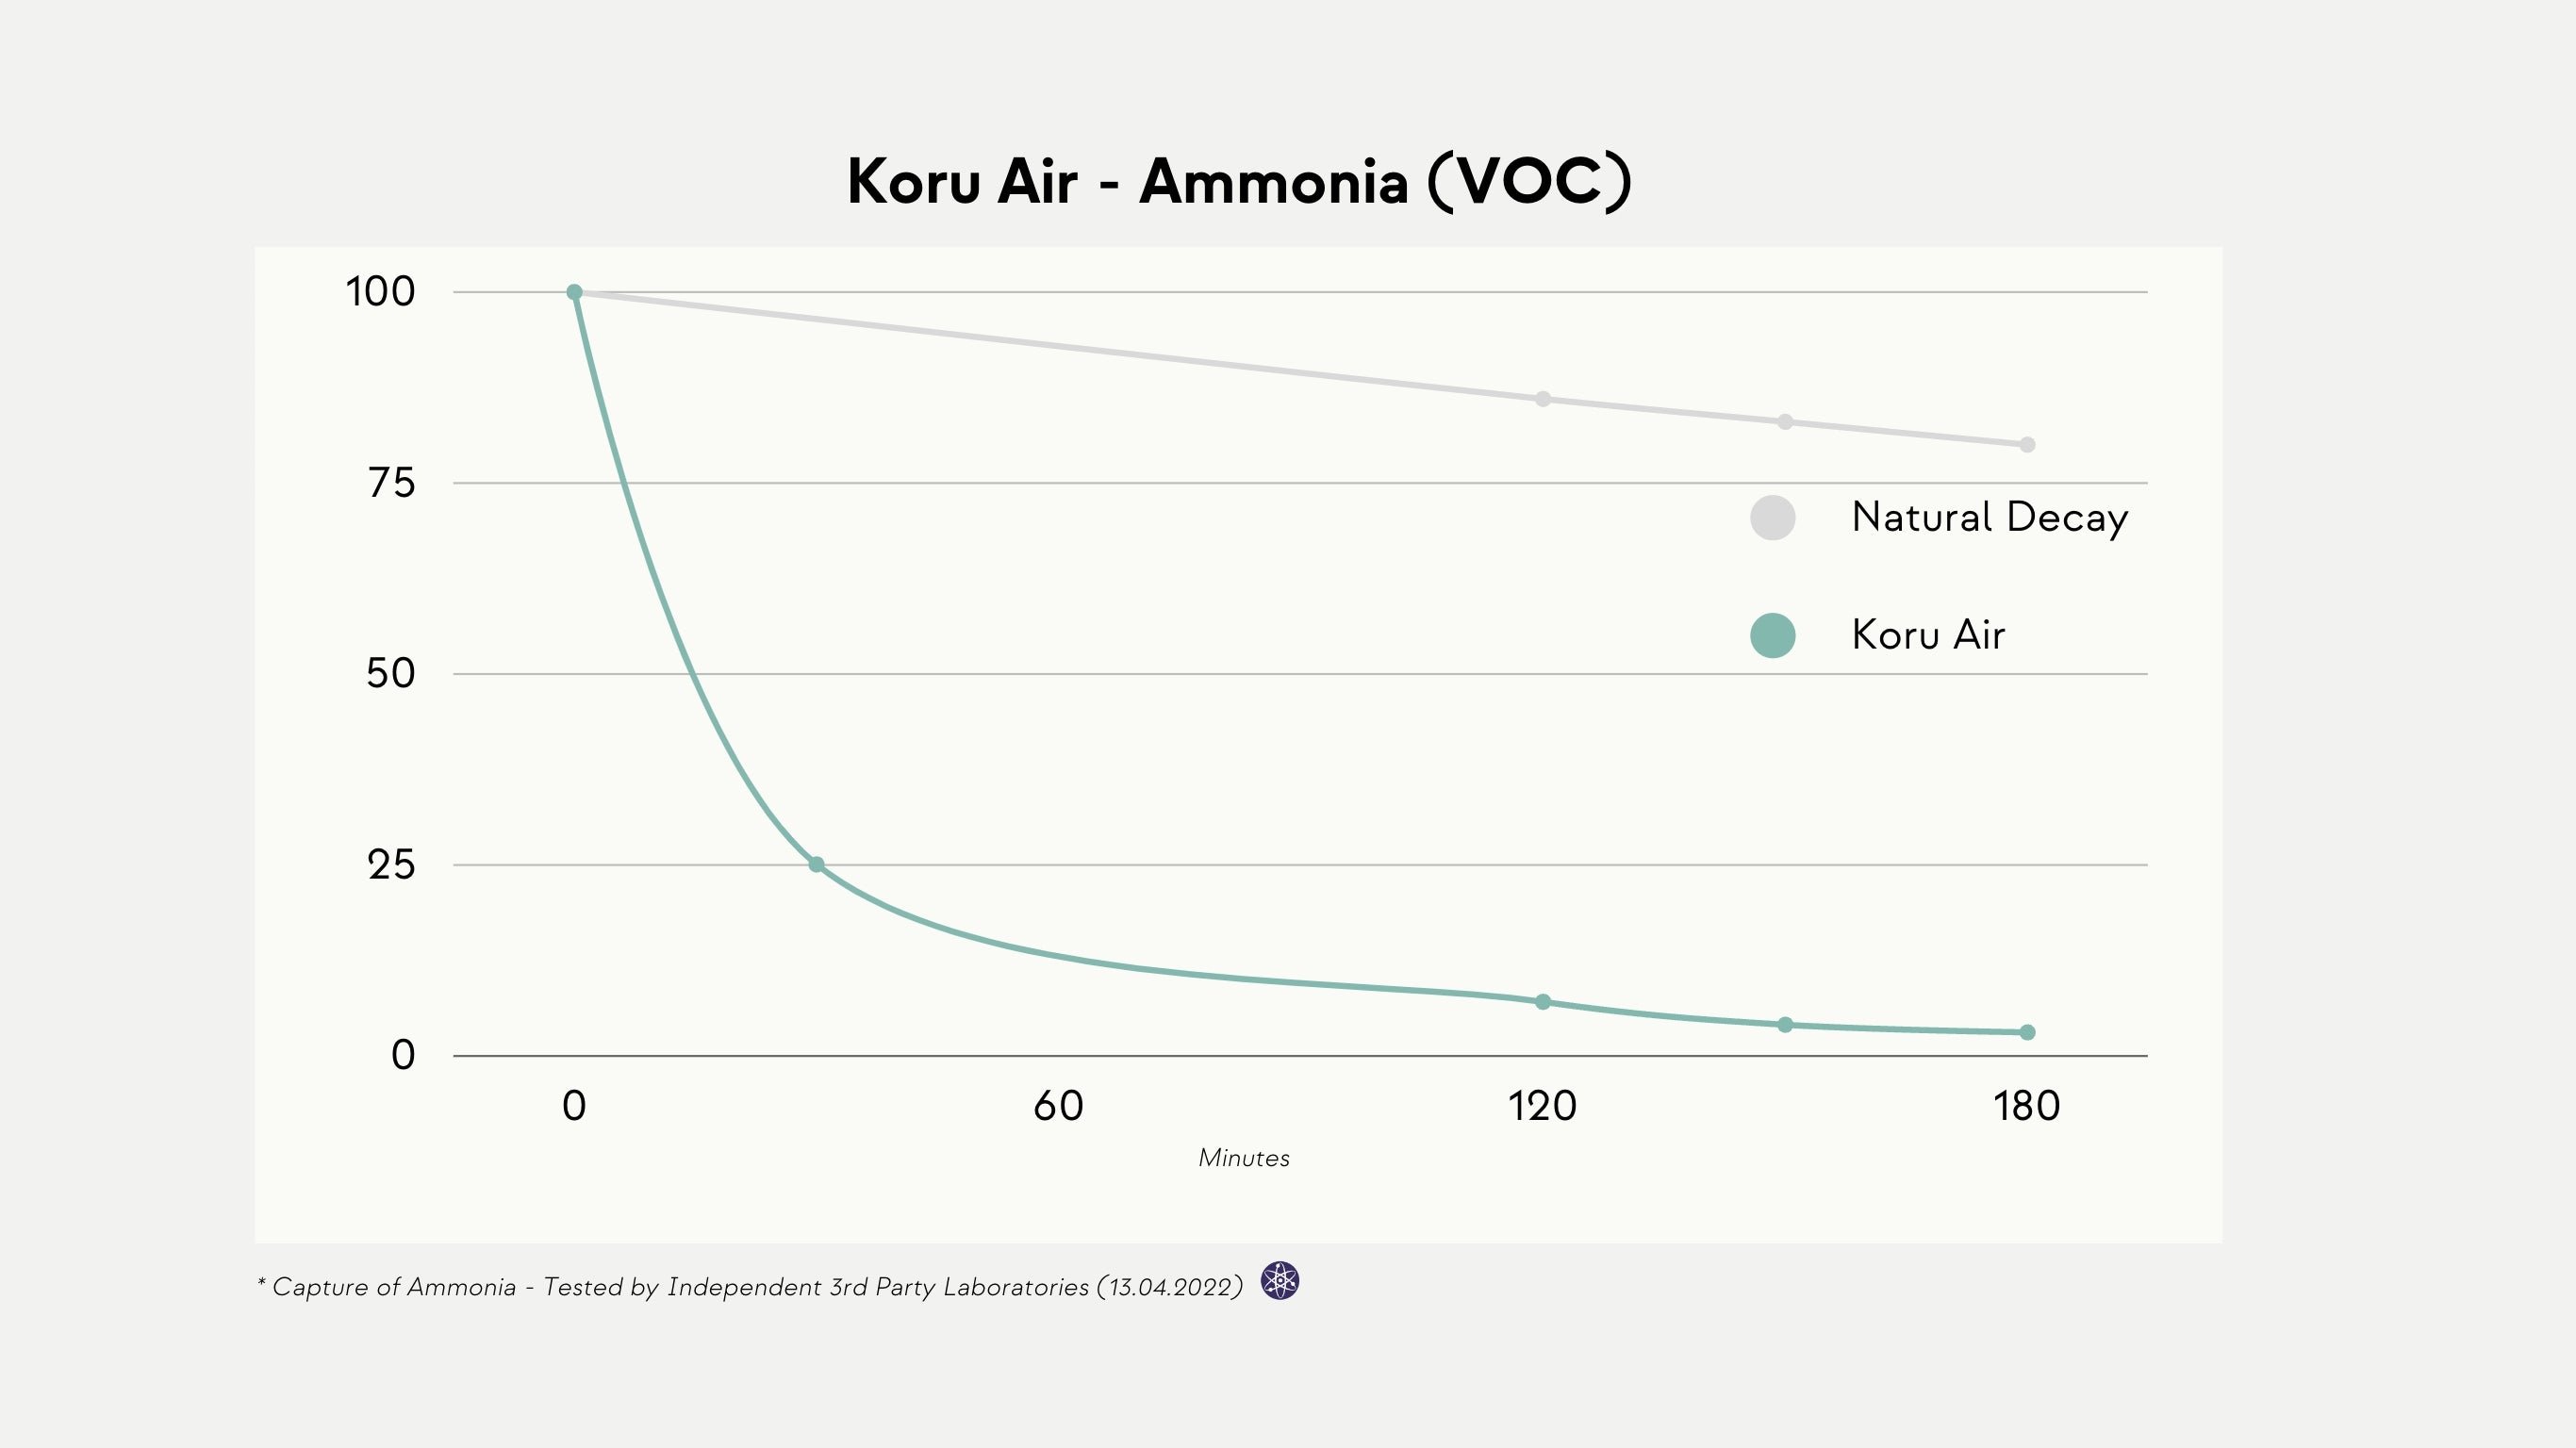 koru air- ammonia voc